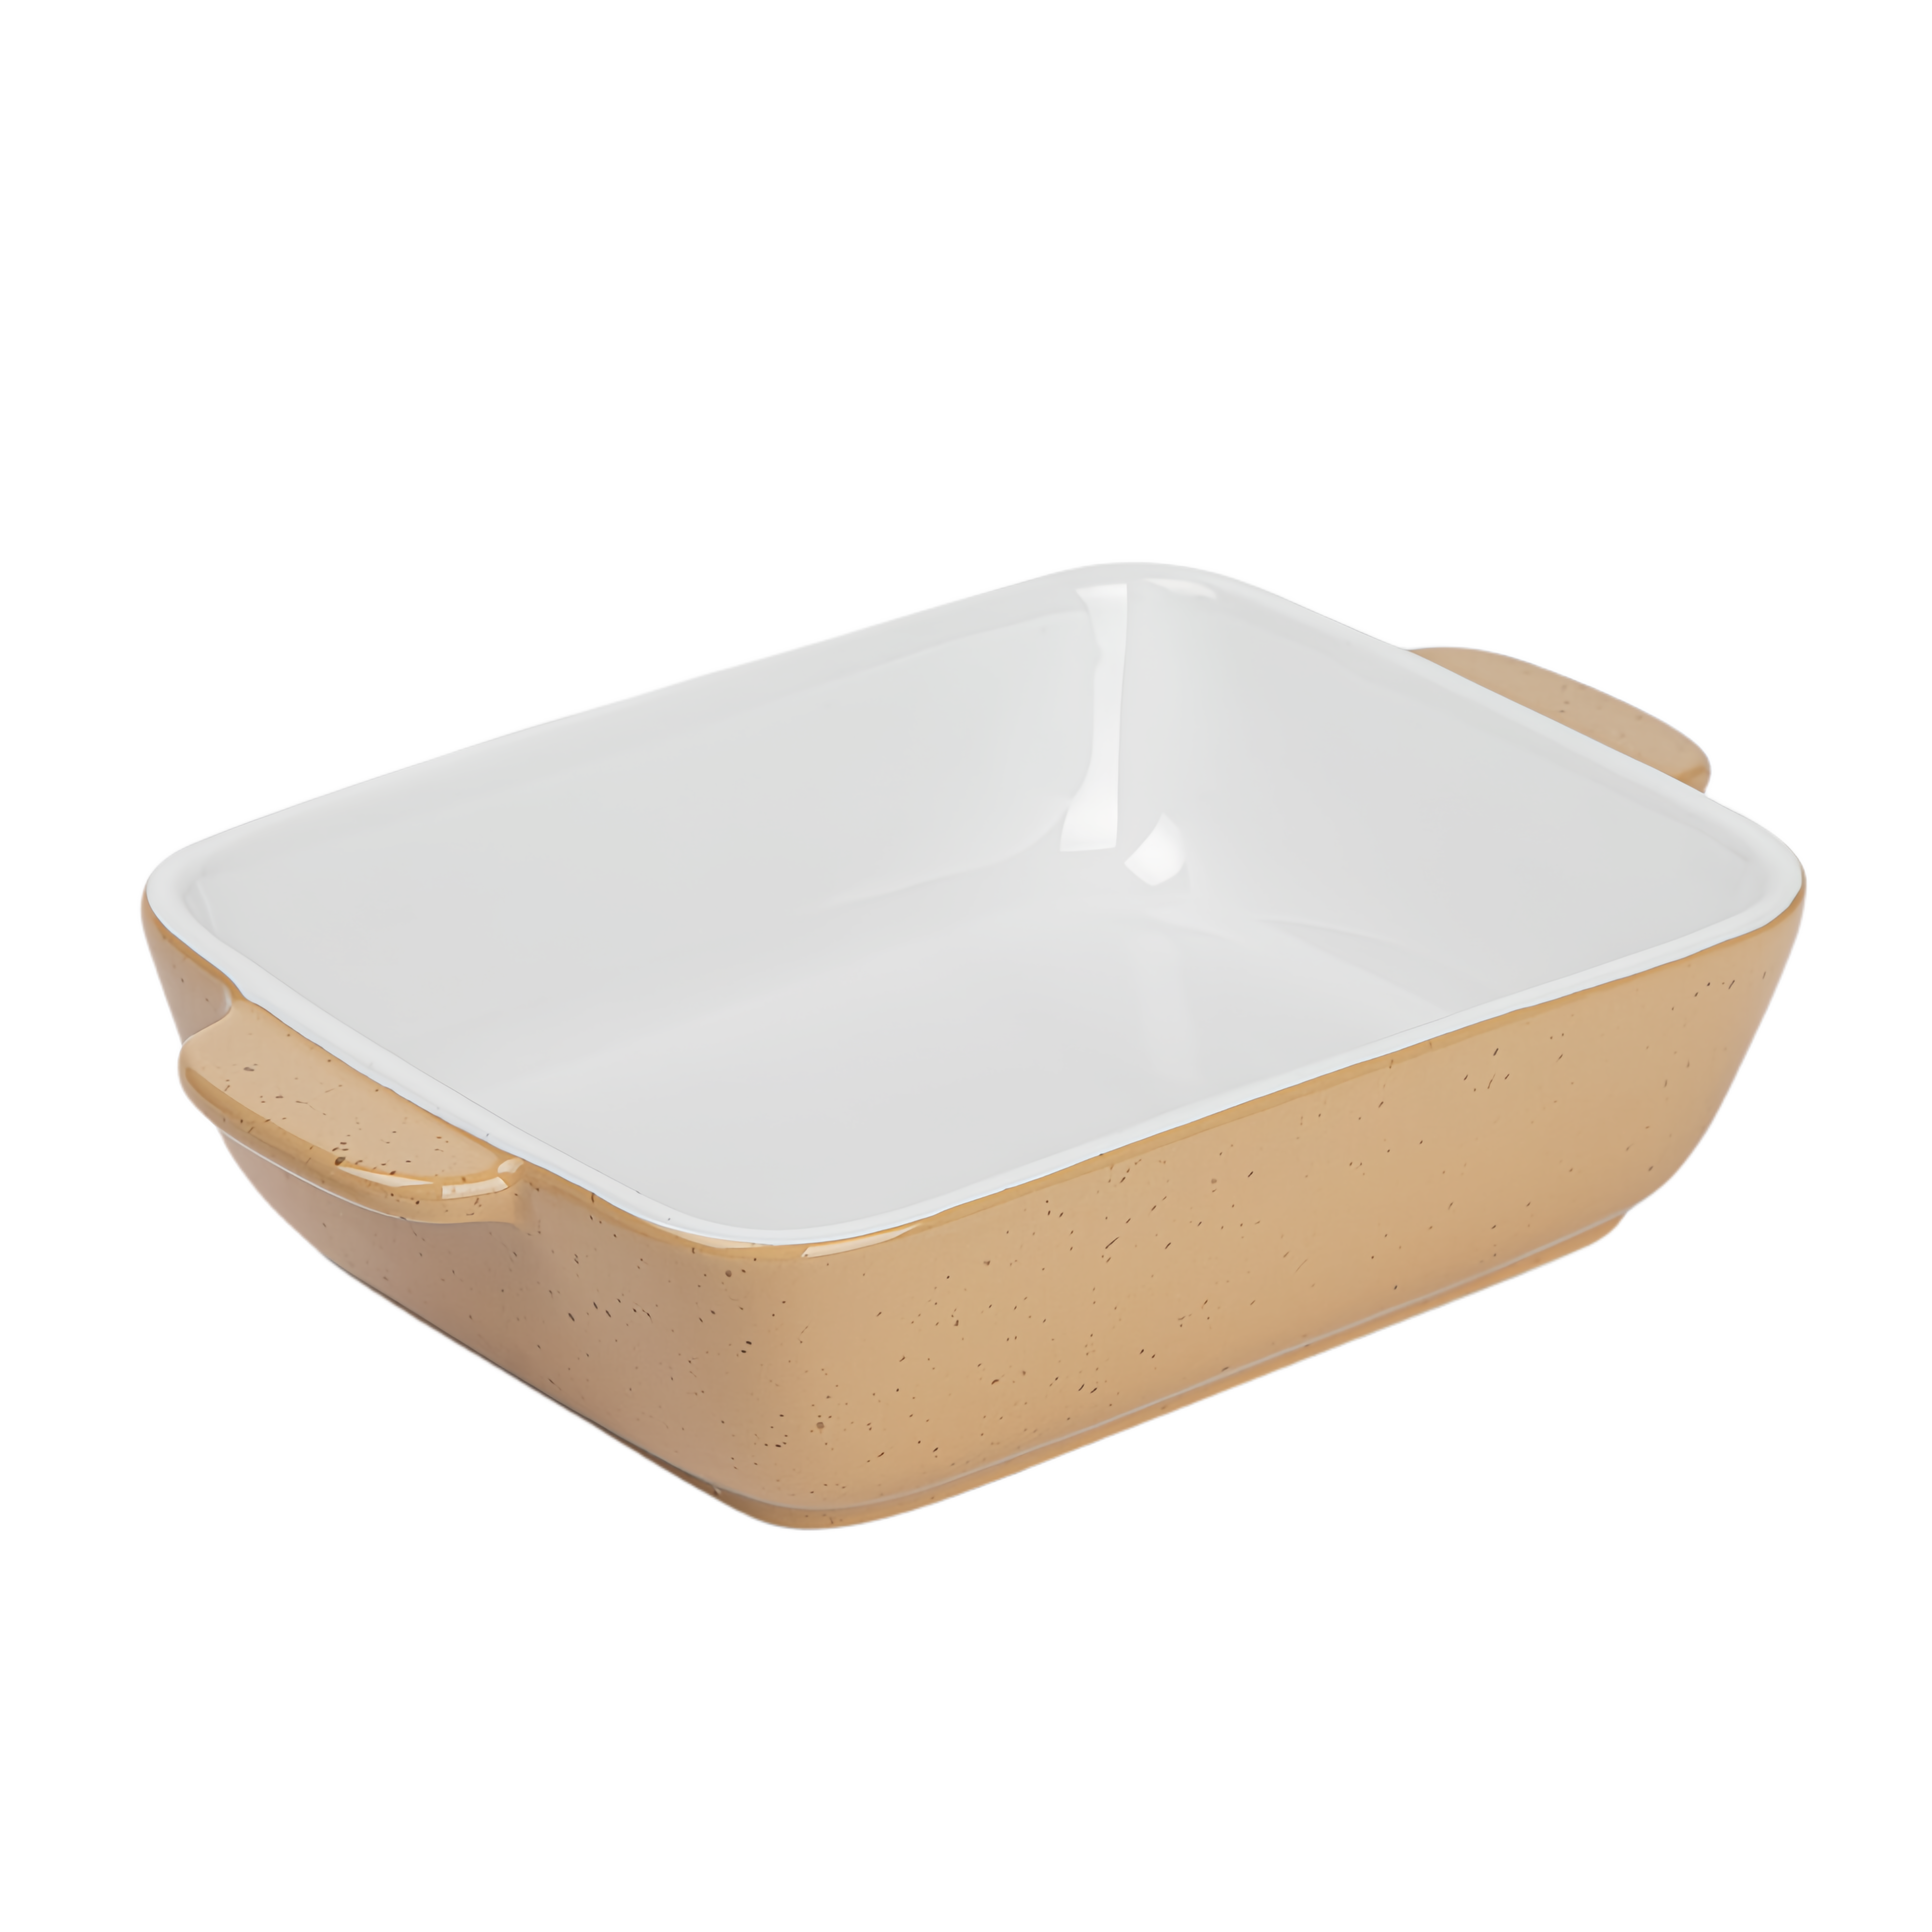 qinge Double-Handled Ceramic Baking Dish/Casserole/Baking Bowl